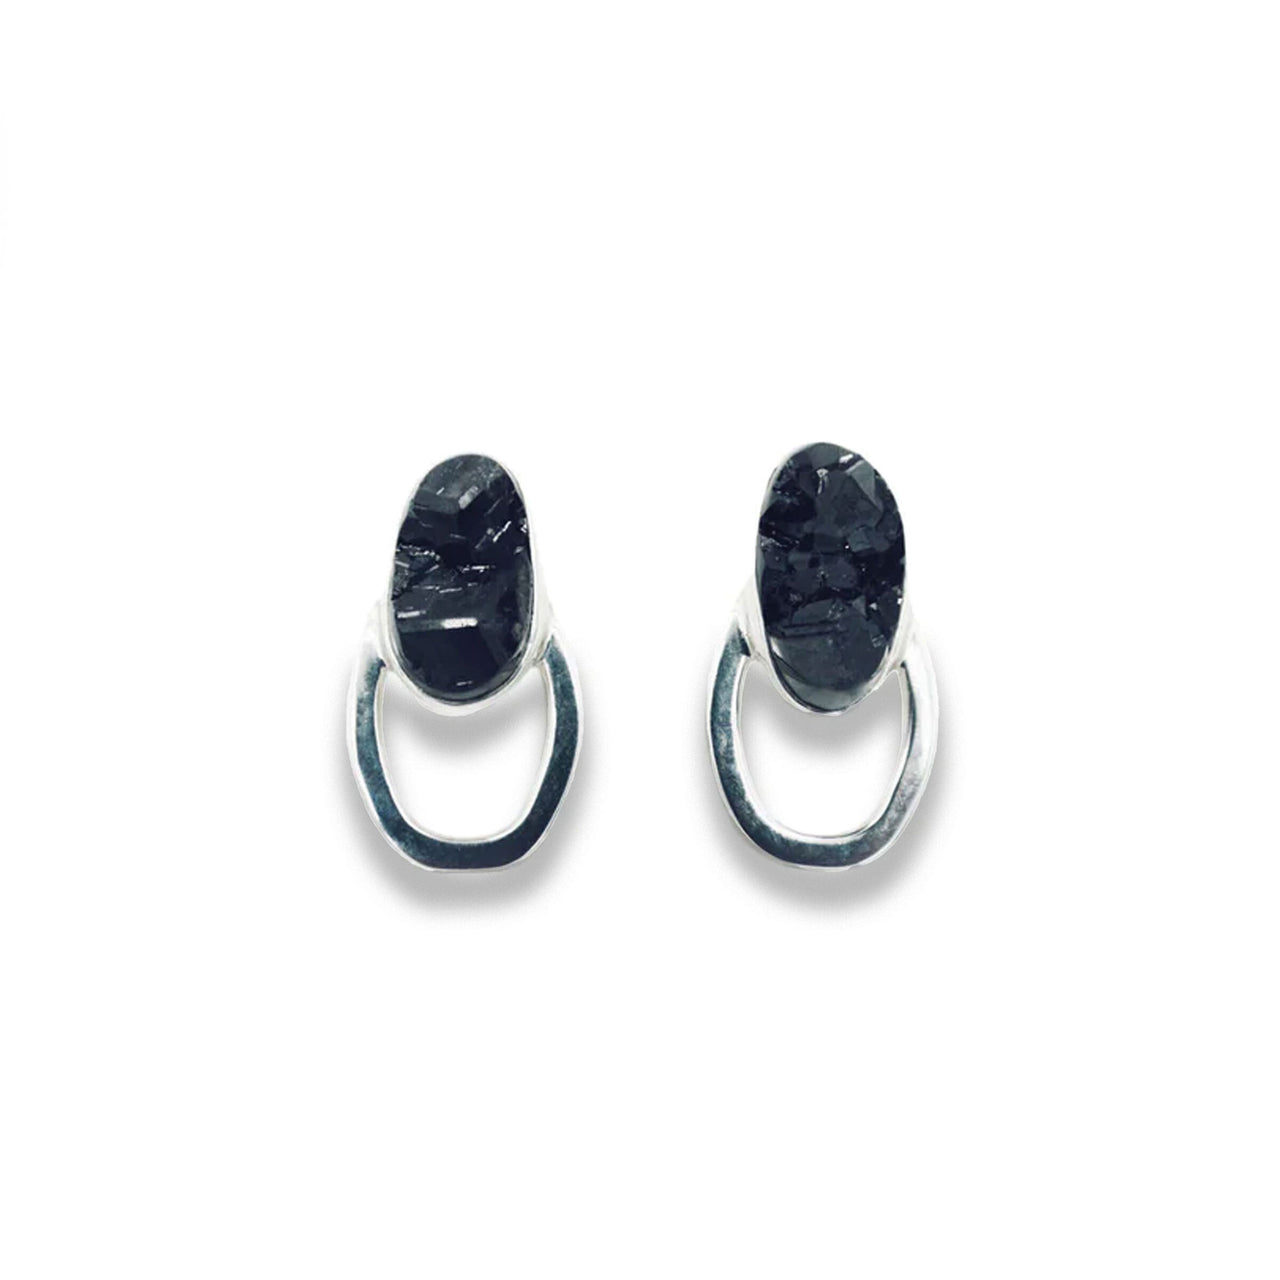 Black Garnet Chain Earrings